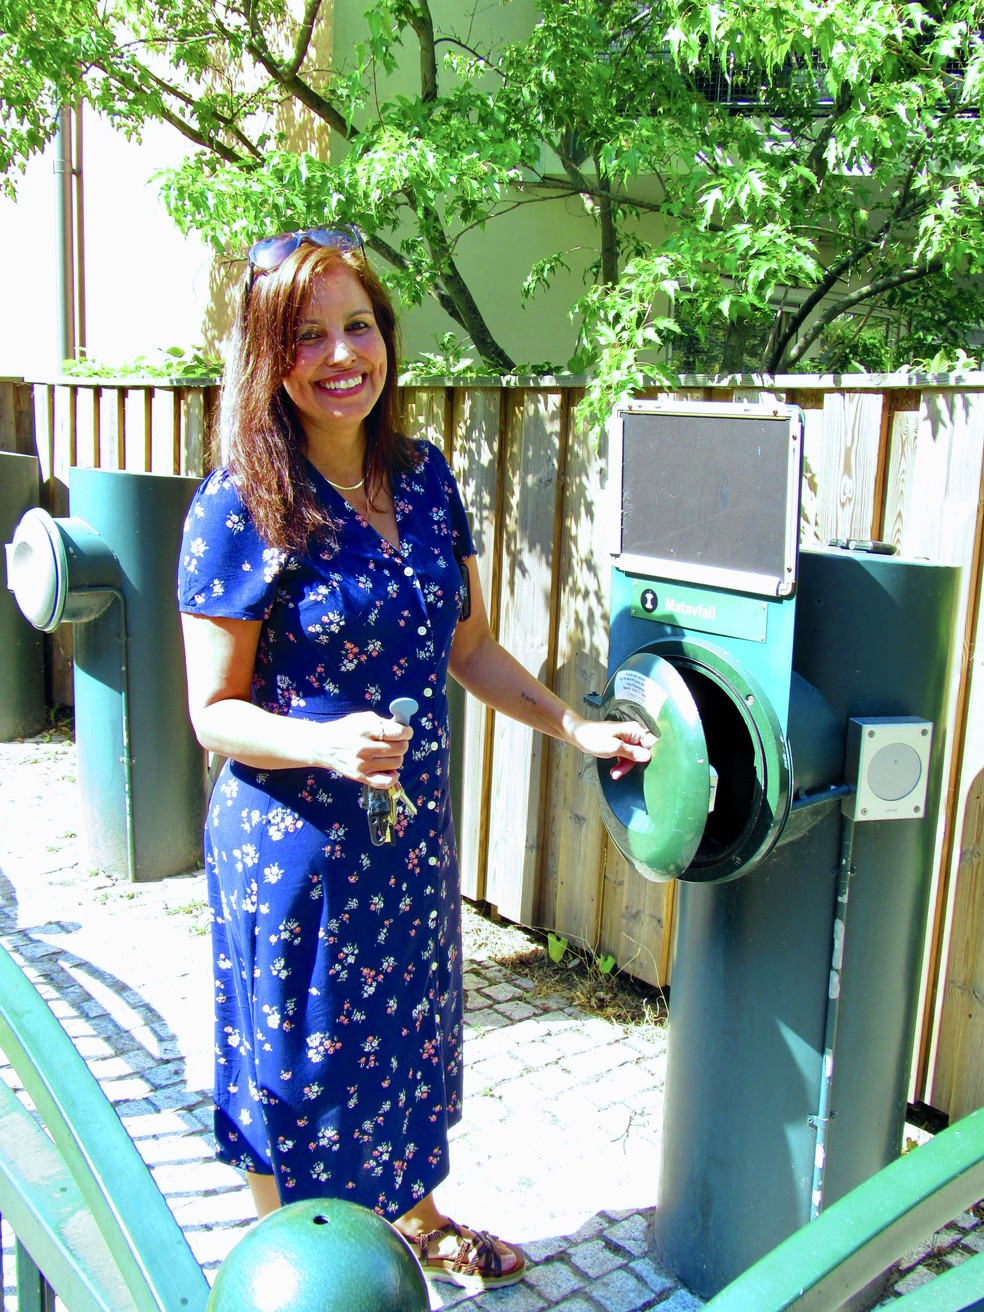  Paula Rigborg reciclando lixo: resíduos são corretamente separados para geração de energia. — Foto: Claudia Maximino